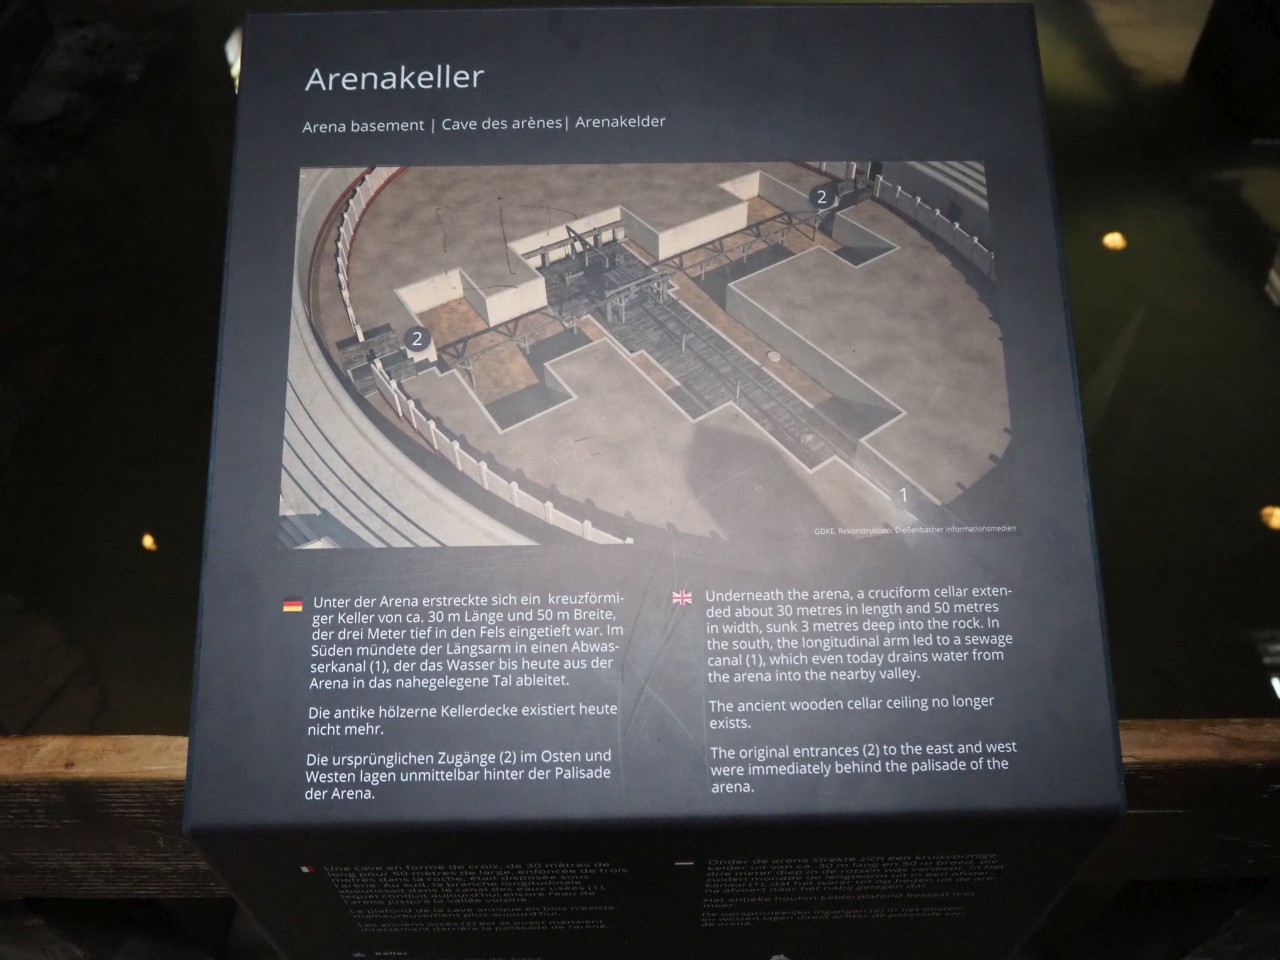 Der angenehm temperierte Arenakeller war der Aufenthalts- und Vorbereitsungsort der Gladiatoren während der Spiele.